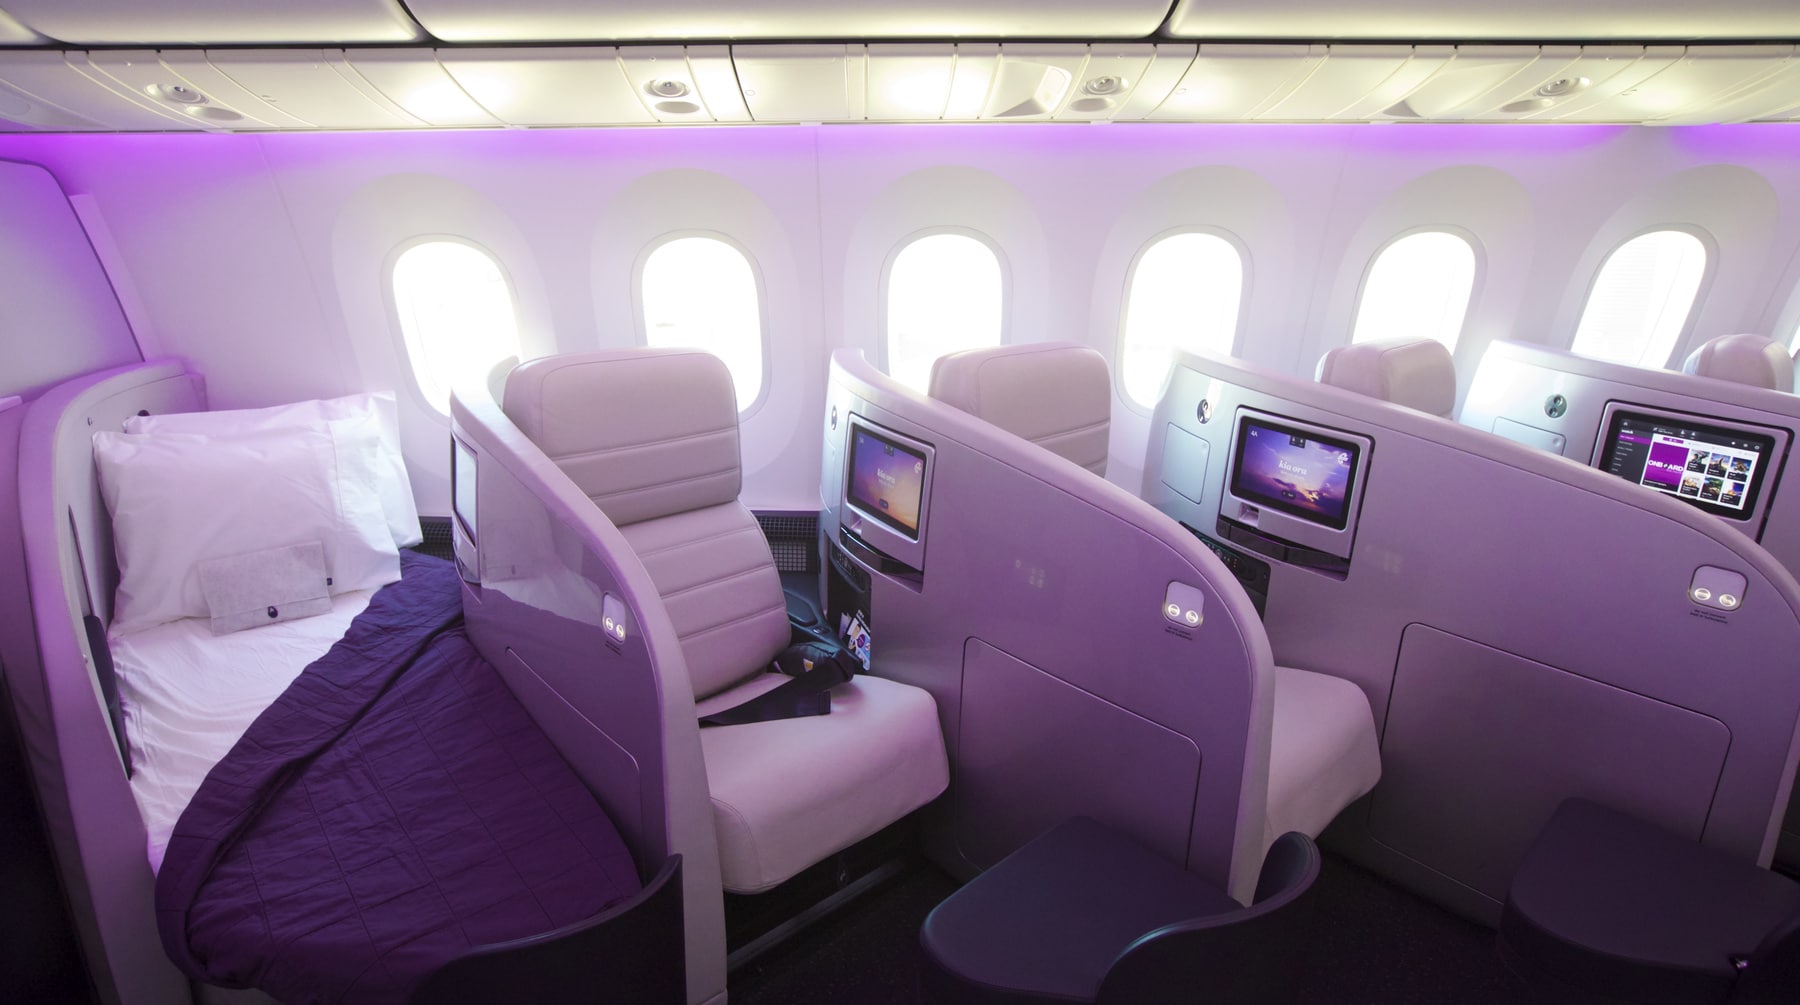 Air New Zealand Boeing 777-300ER Business Class Review